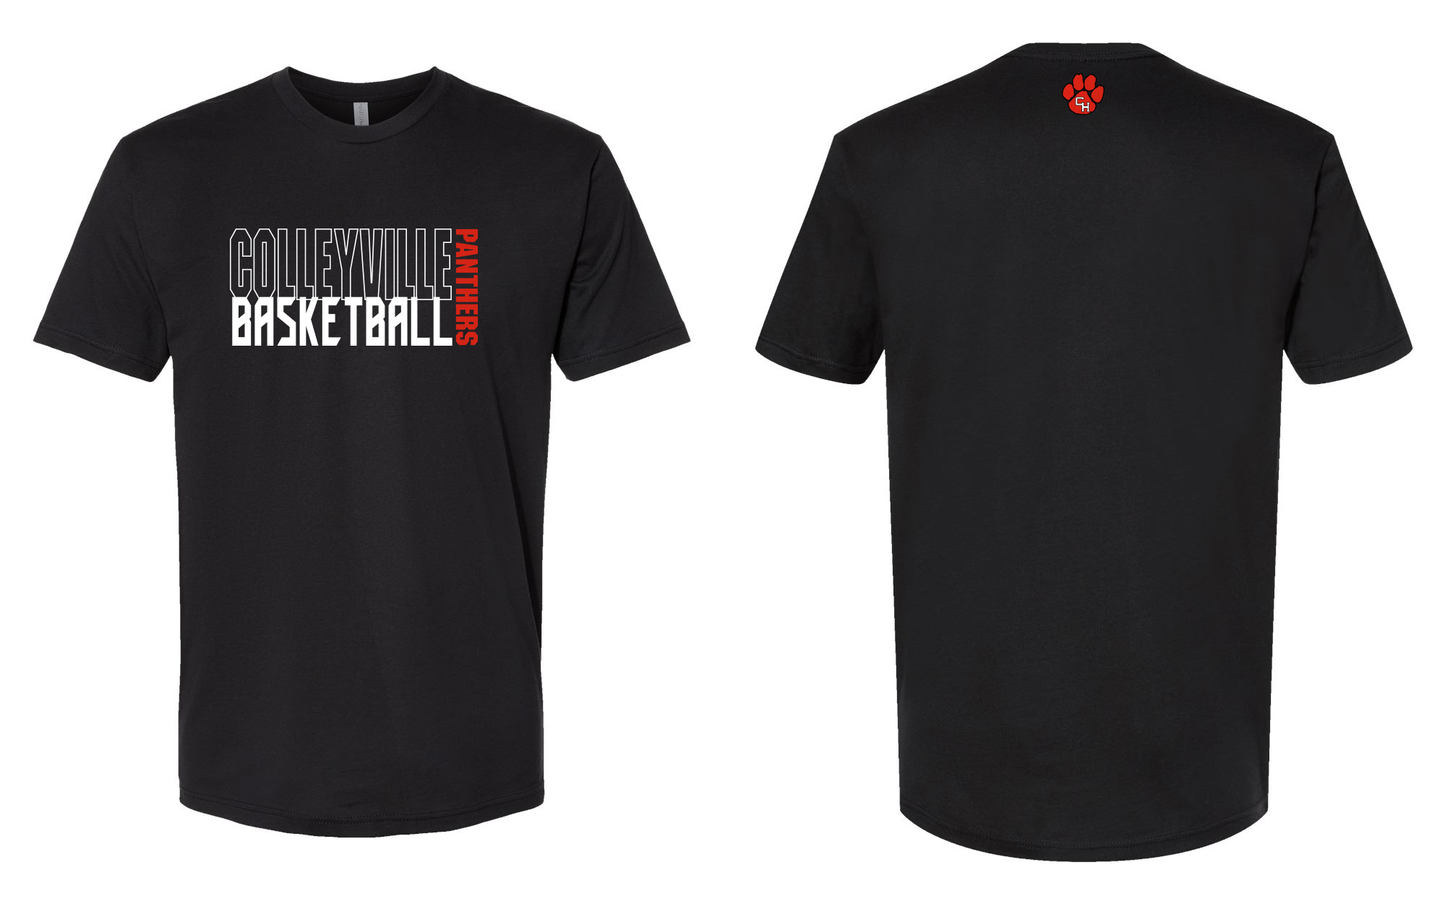 C-Ville Basketball Tee Shirt